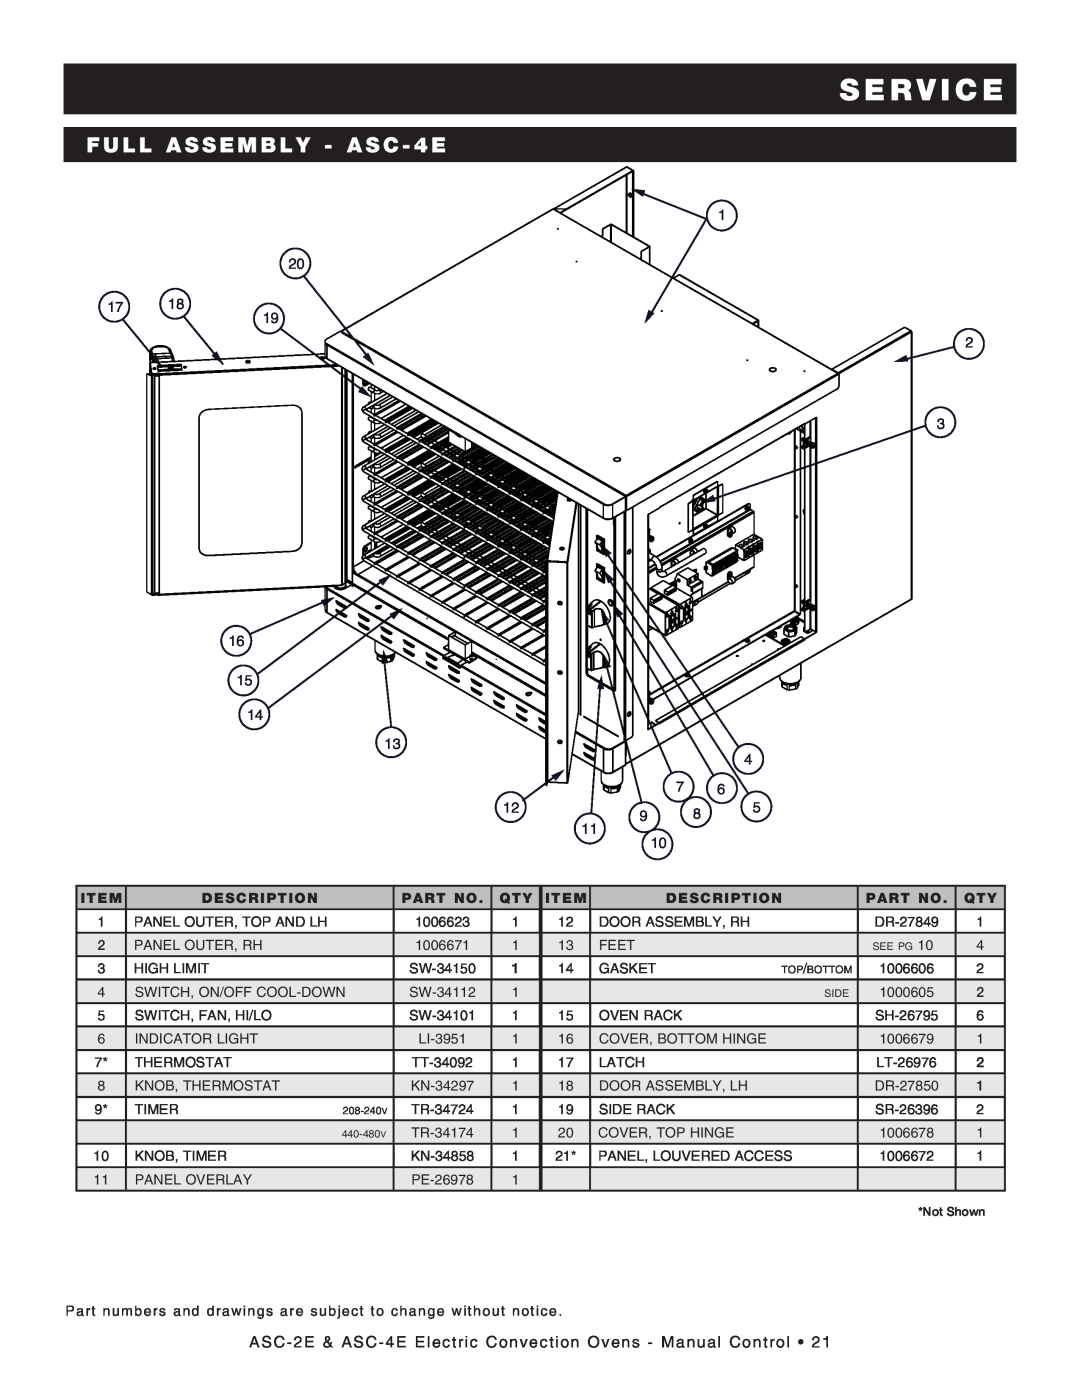 Alto-Shaam Convection Oven, ASC-4E, ASC-2E manual FULL ASSEMBLY - ASC - 4E, S E R V I C E, Description 